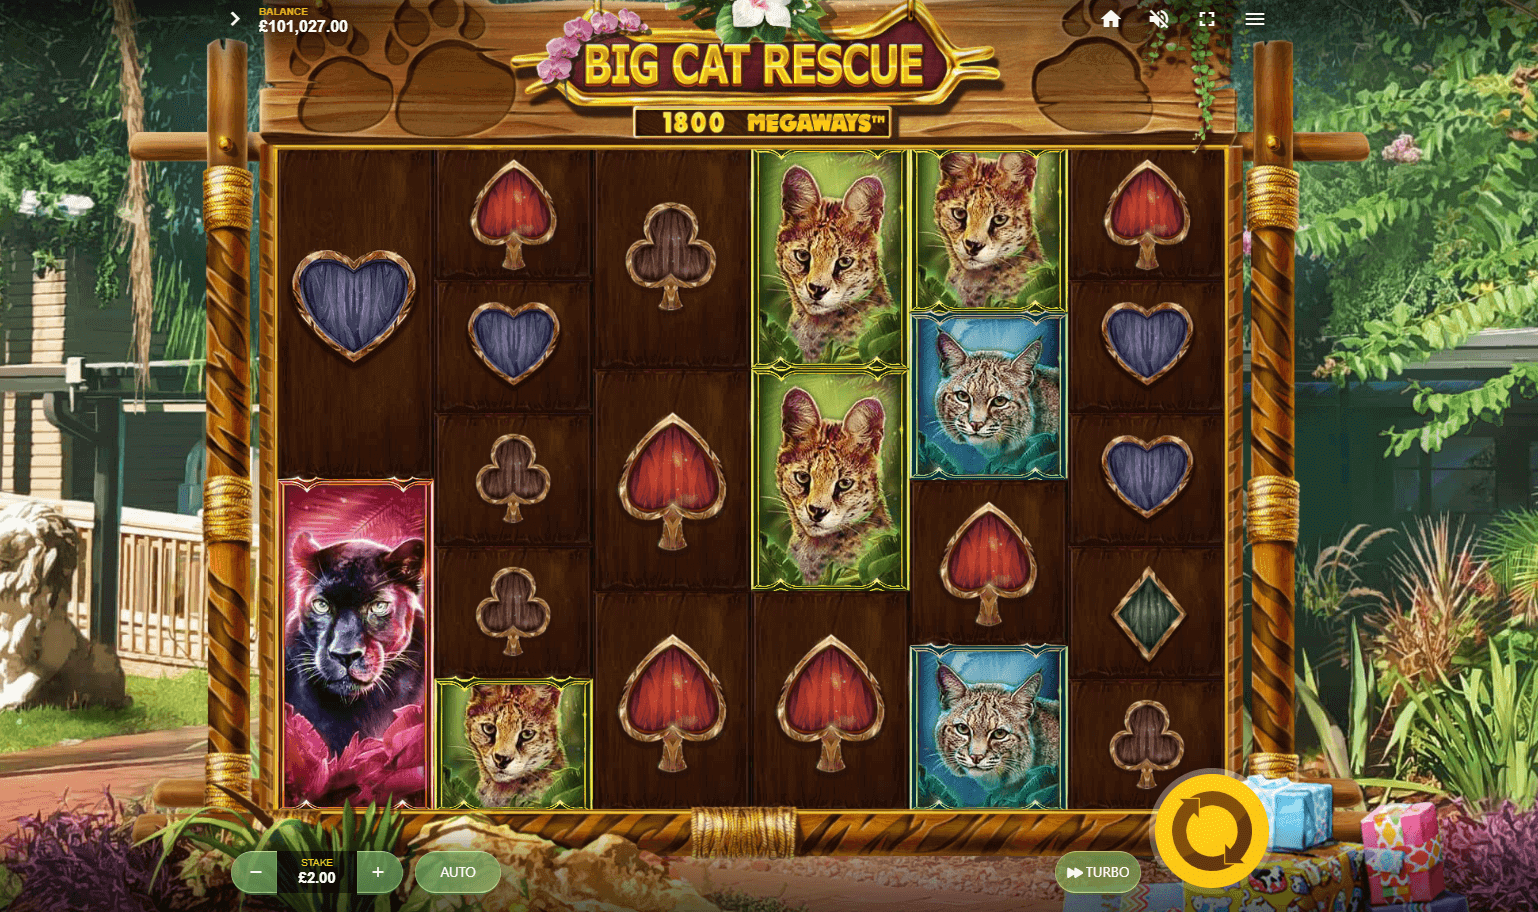 Big Cat Rescue Megaways slot